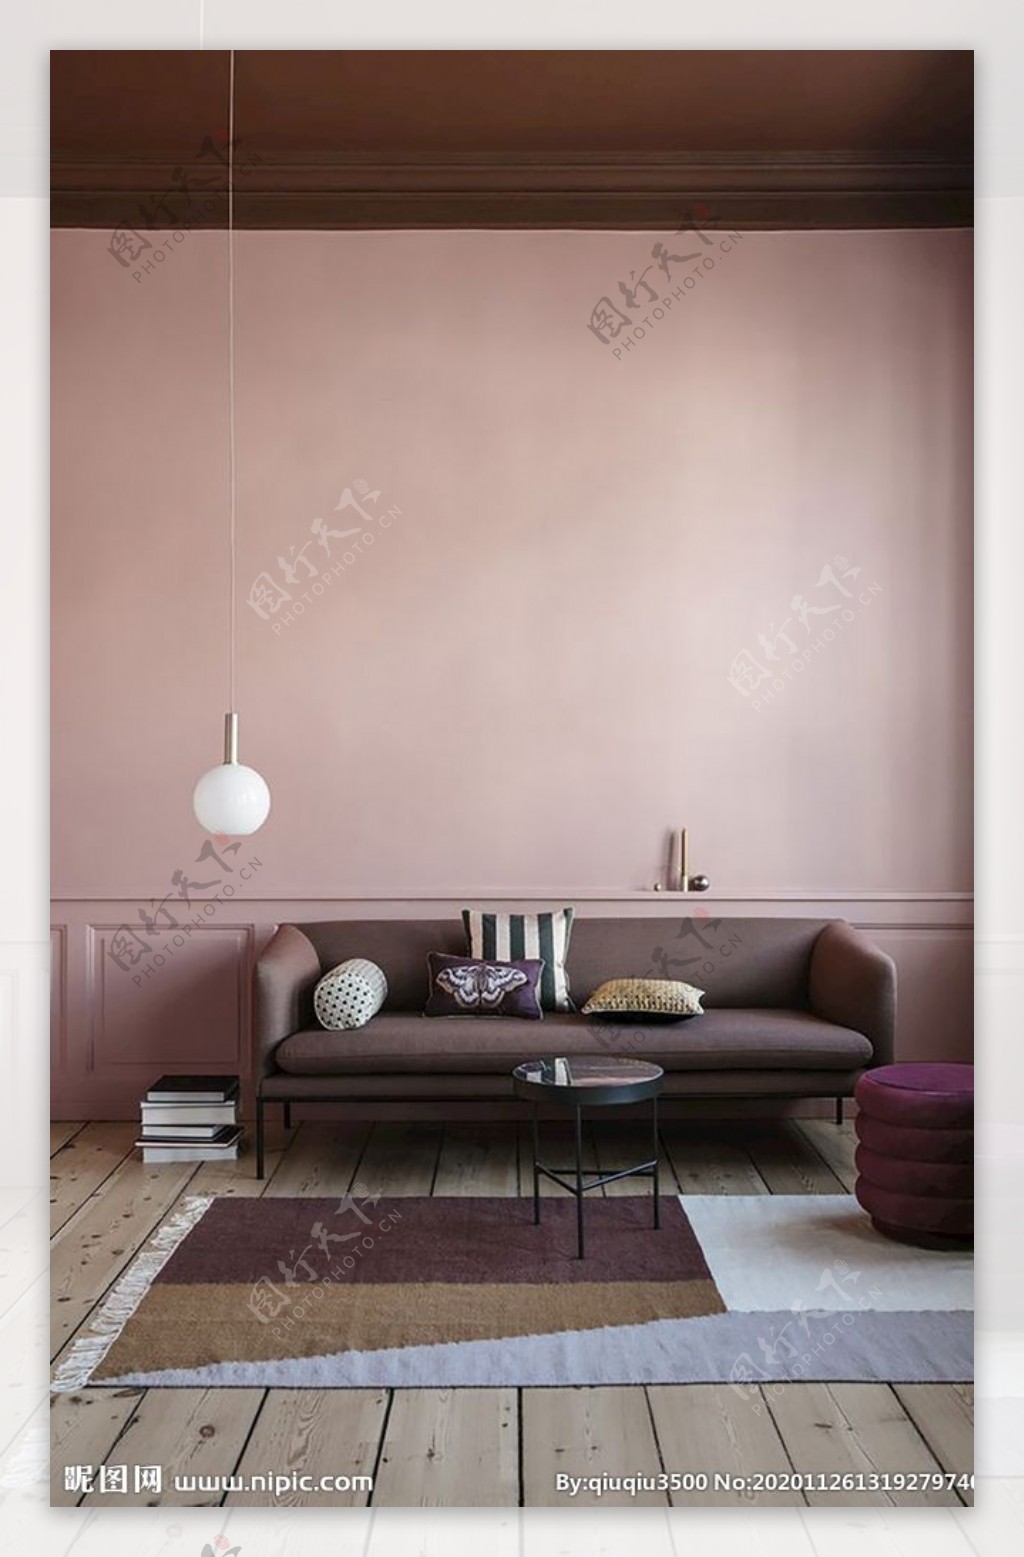 淡紫色墙纸效果图图片